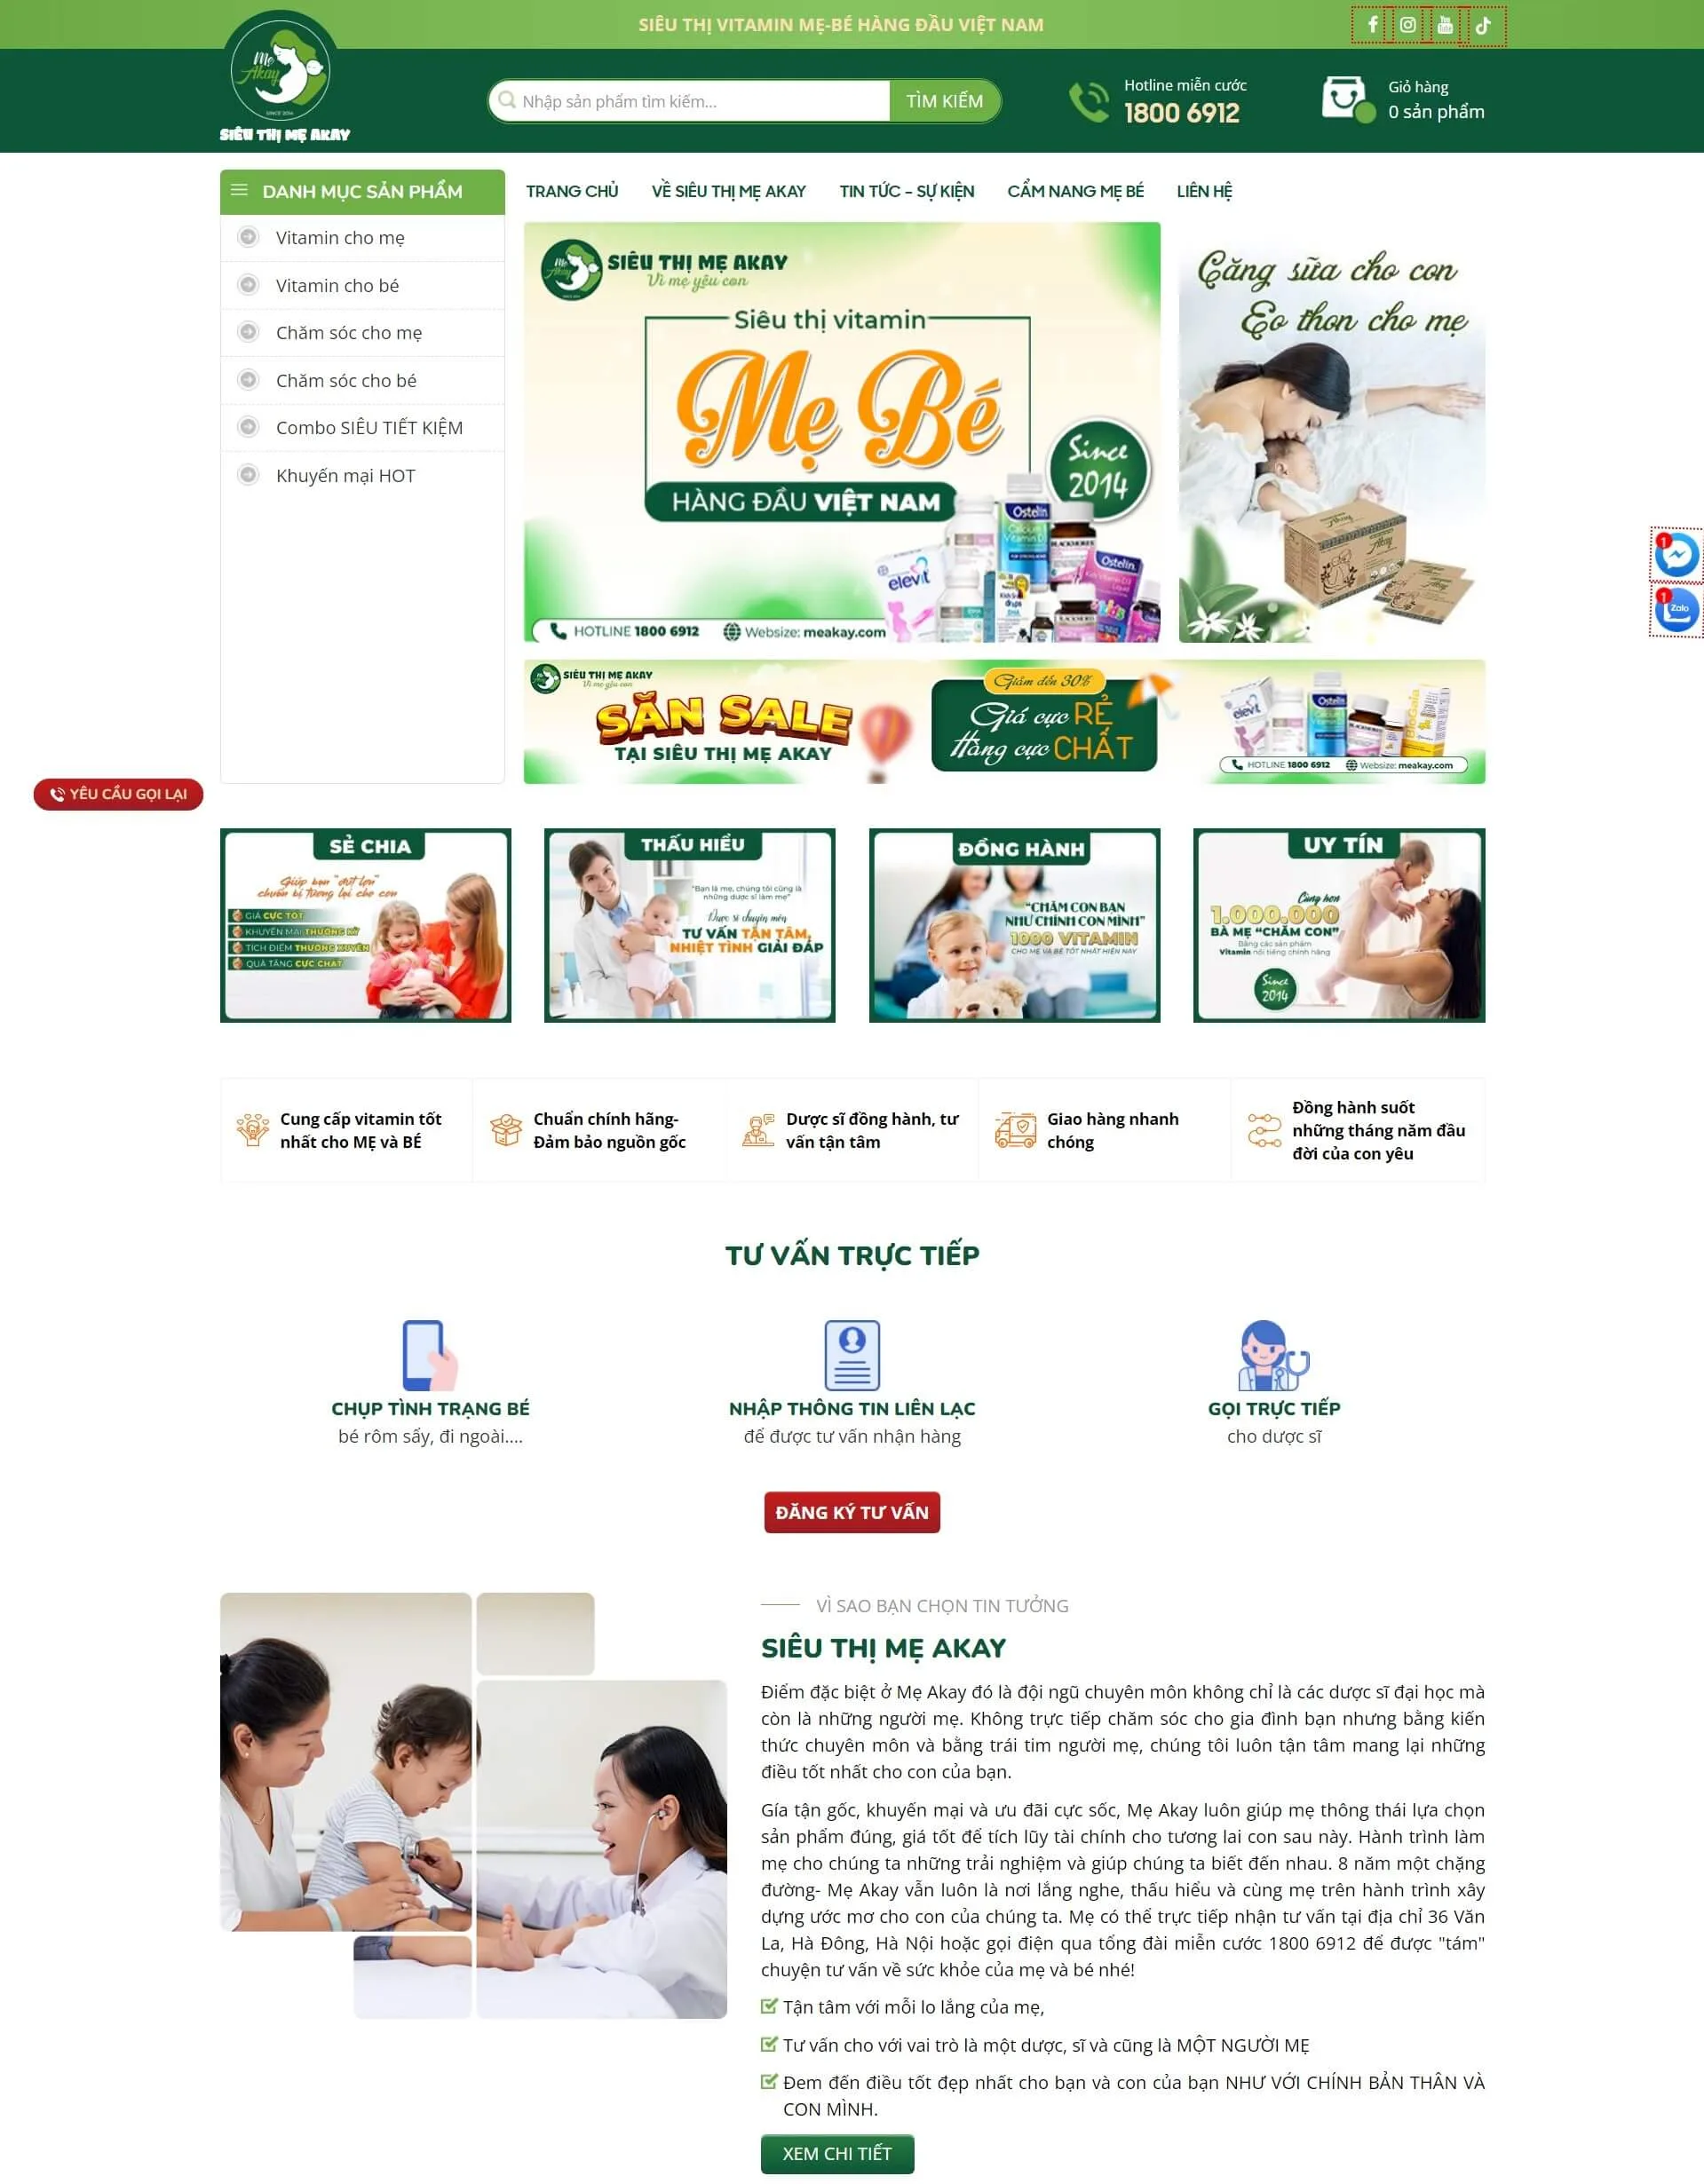 Dự án thiết kế website Siêu thị lợi sữa của Alla